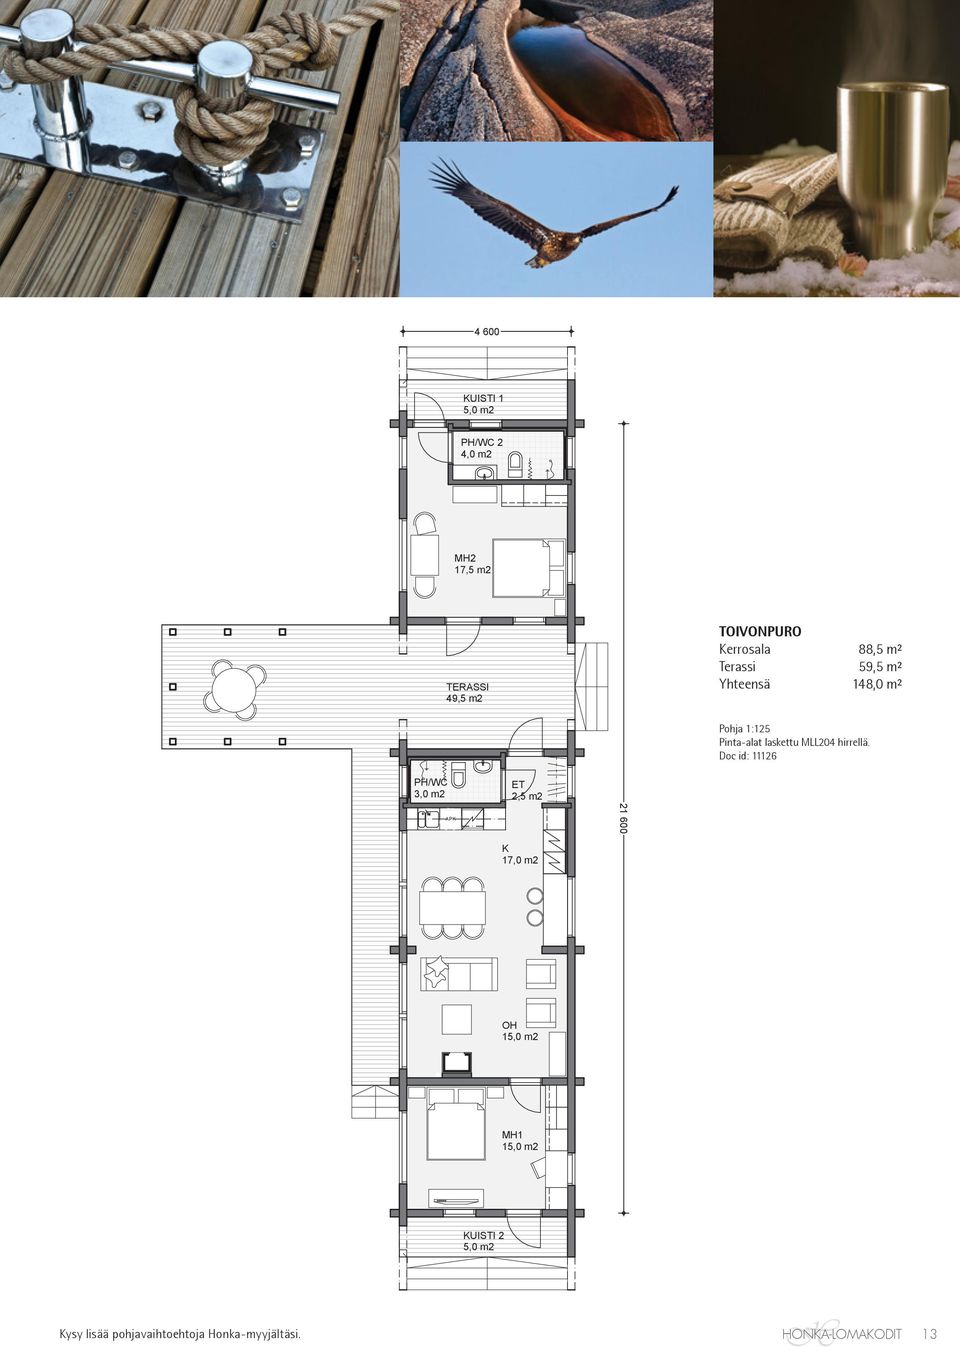 Terassi 59,5 m² Yhteensä 148,0 m² Pohja 1:125 Pinta-alat laskettu MLL204 hirrellä.